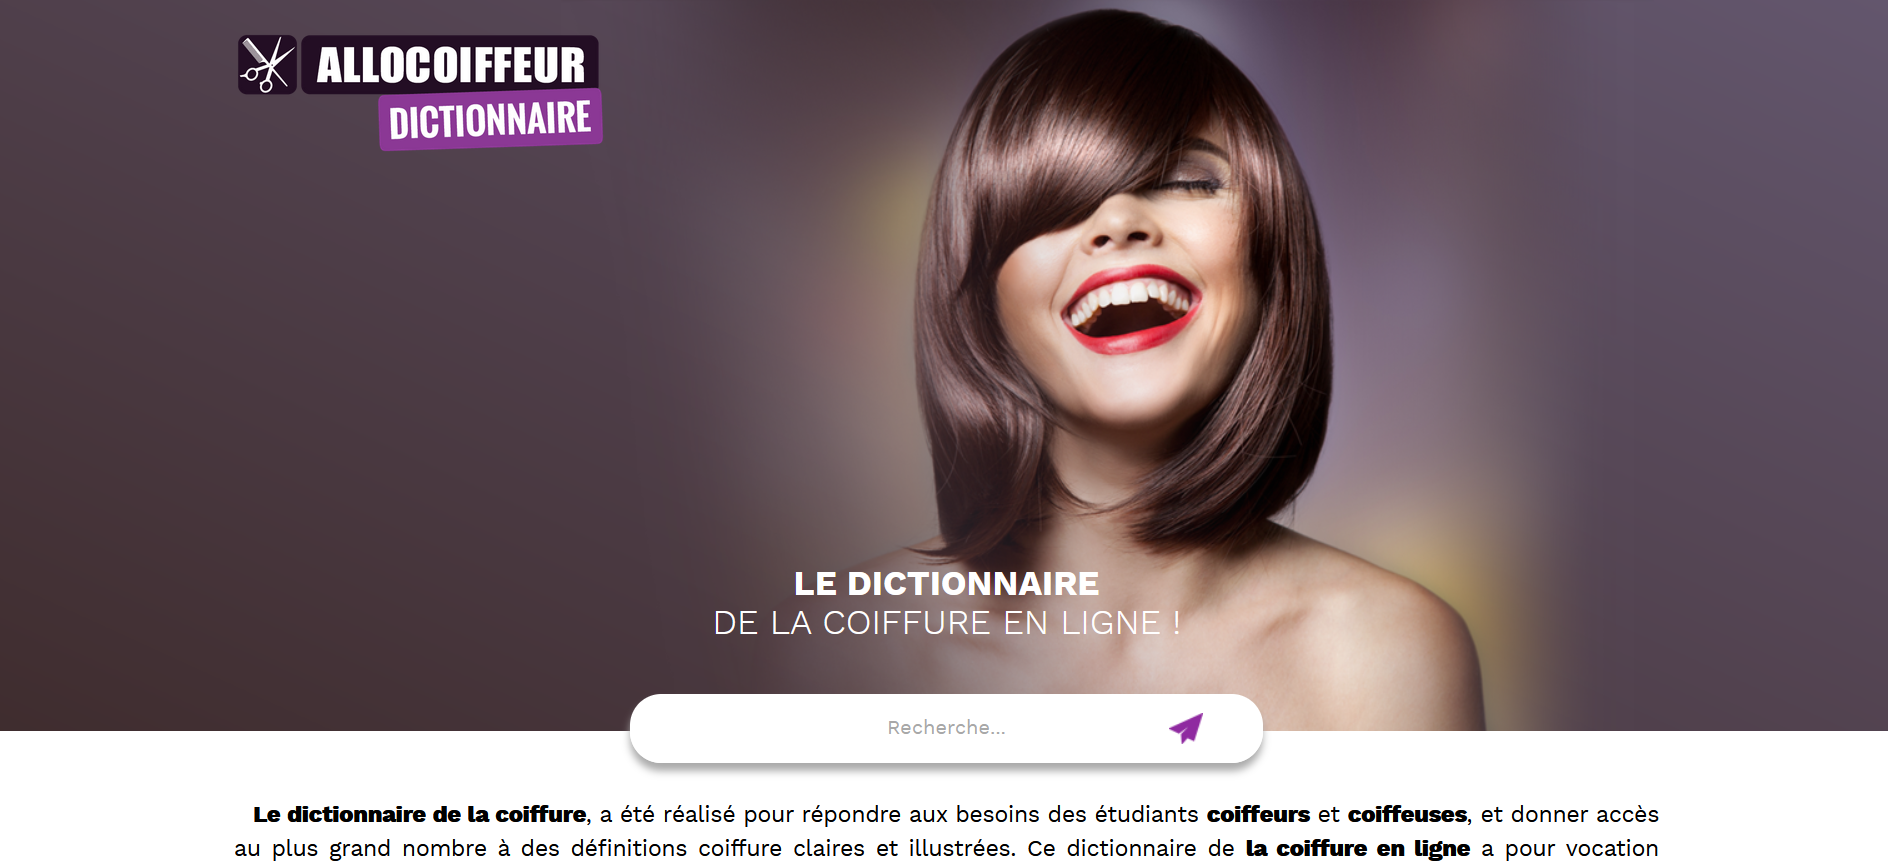 Dictionnaire AlloCoiffeur - Vocabulaire et définitions pour les coiffeurs